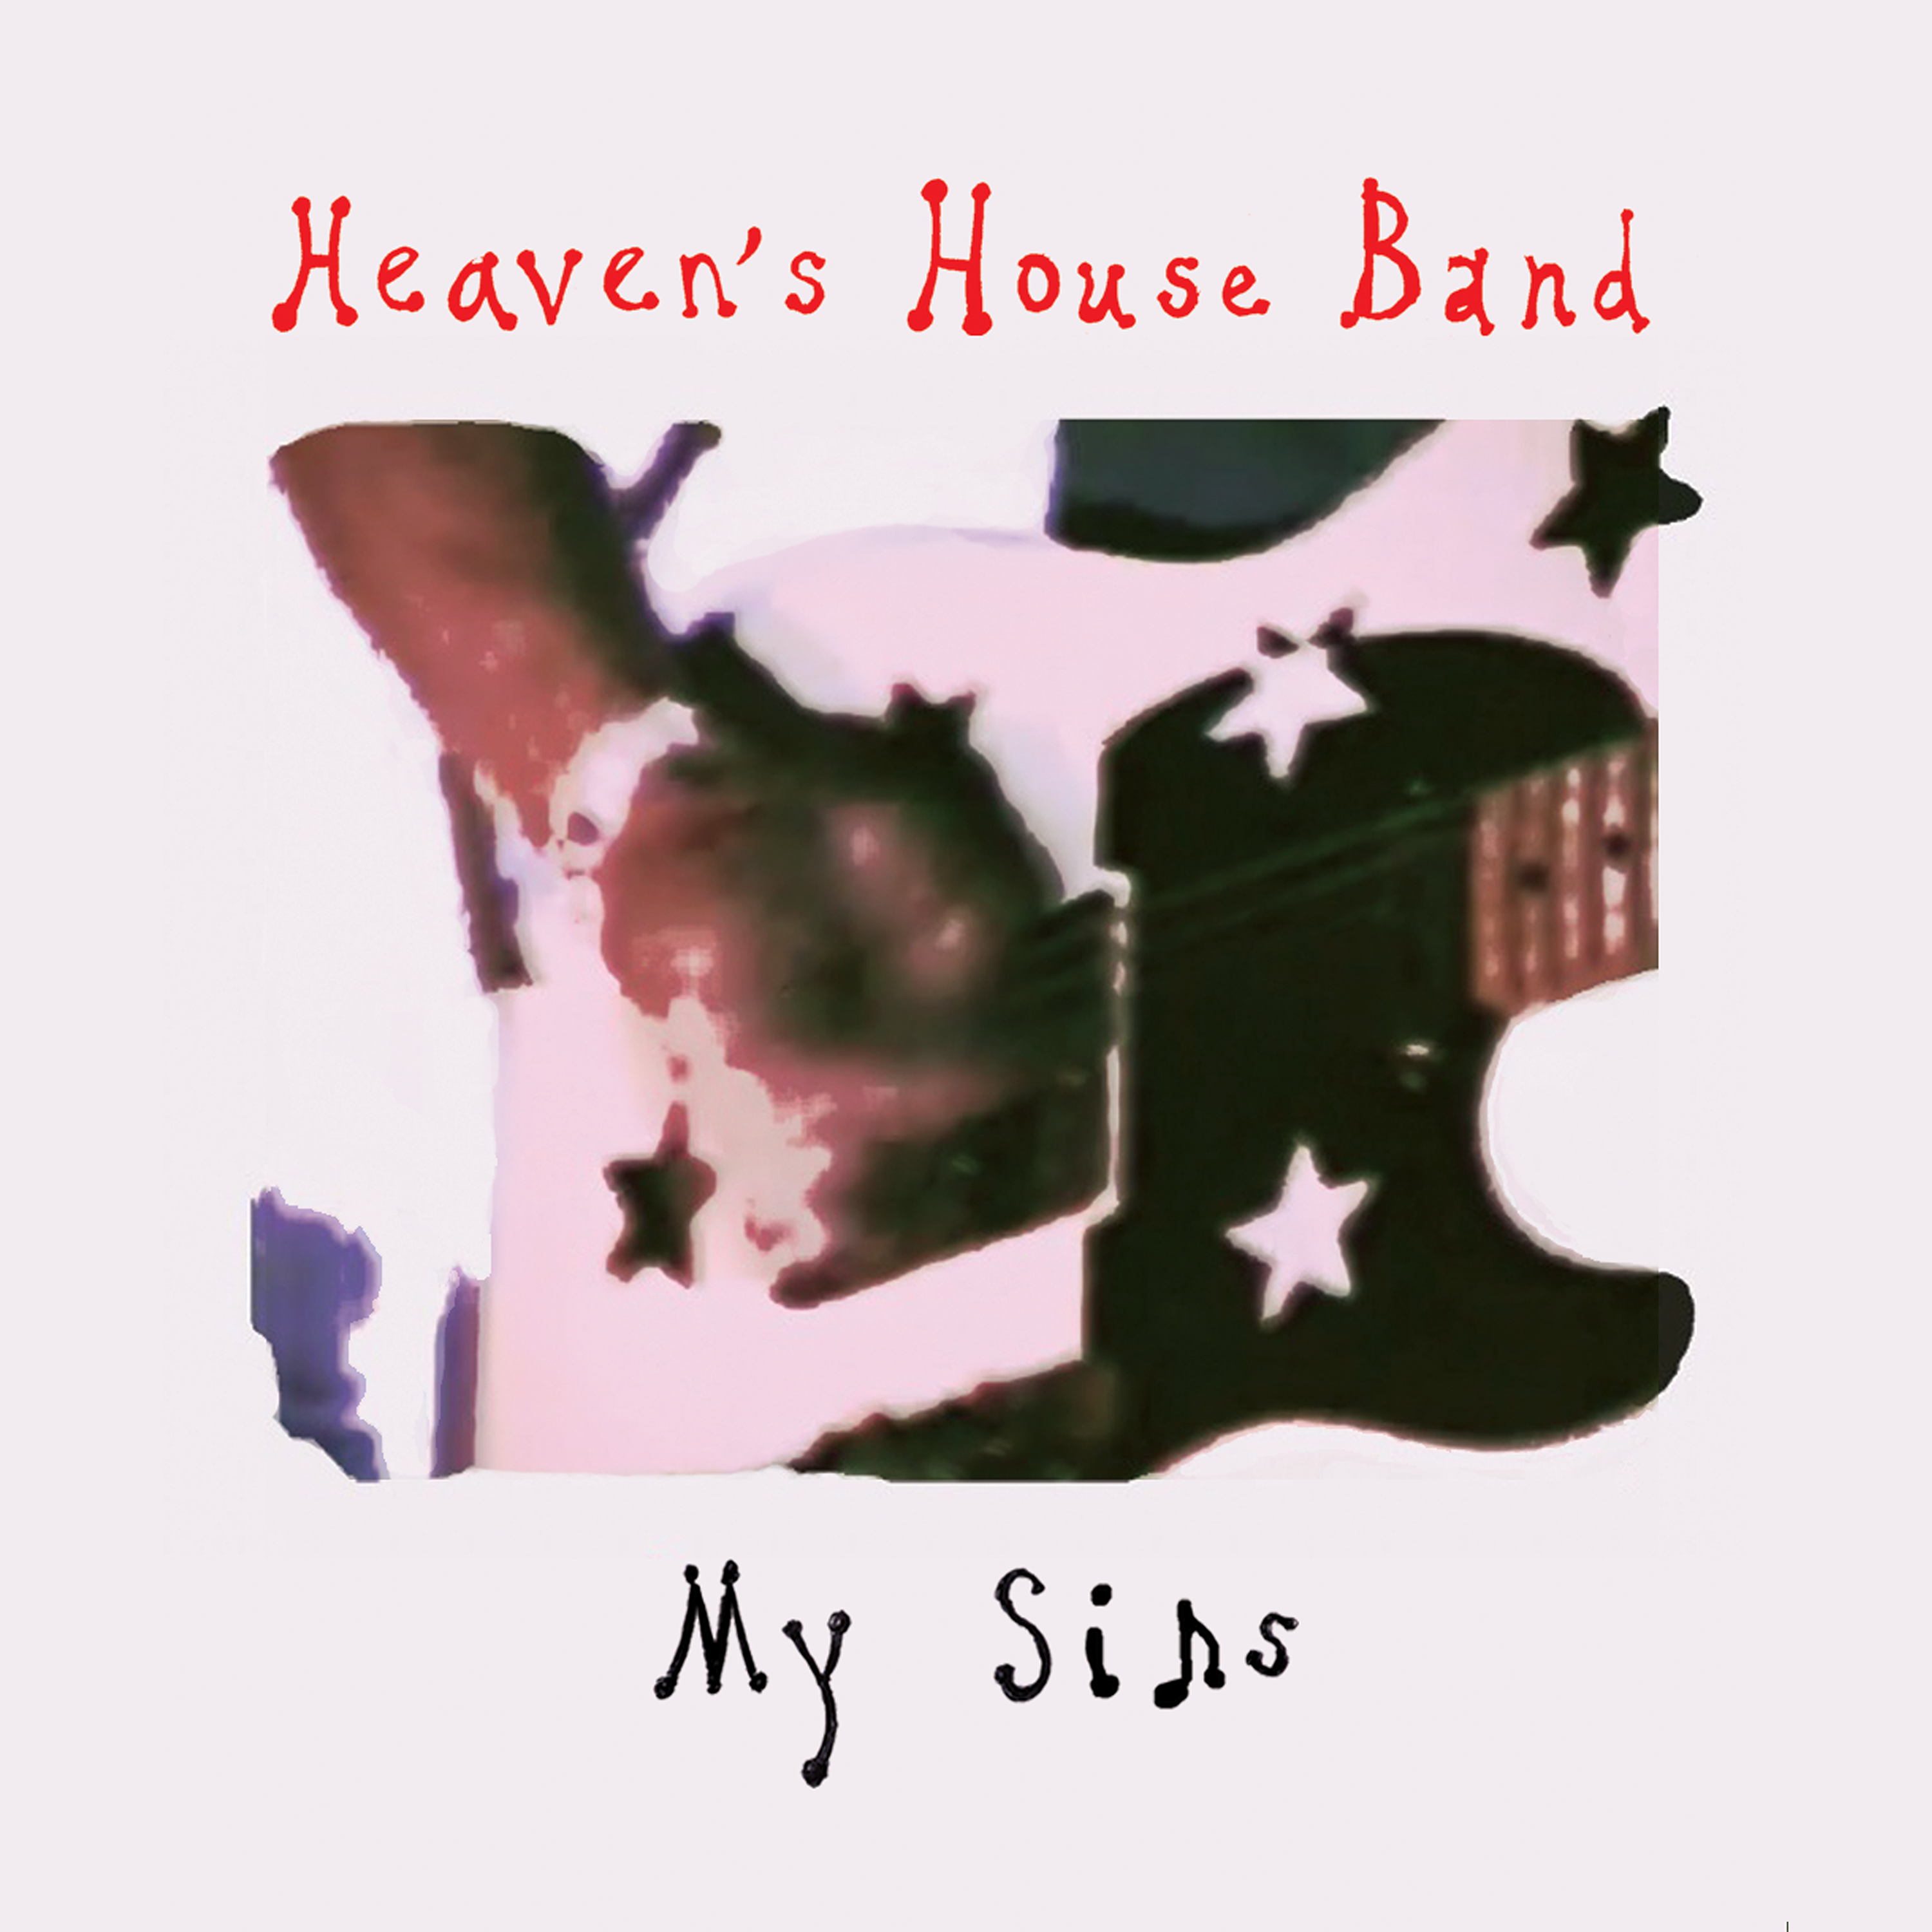 heavens_house_band